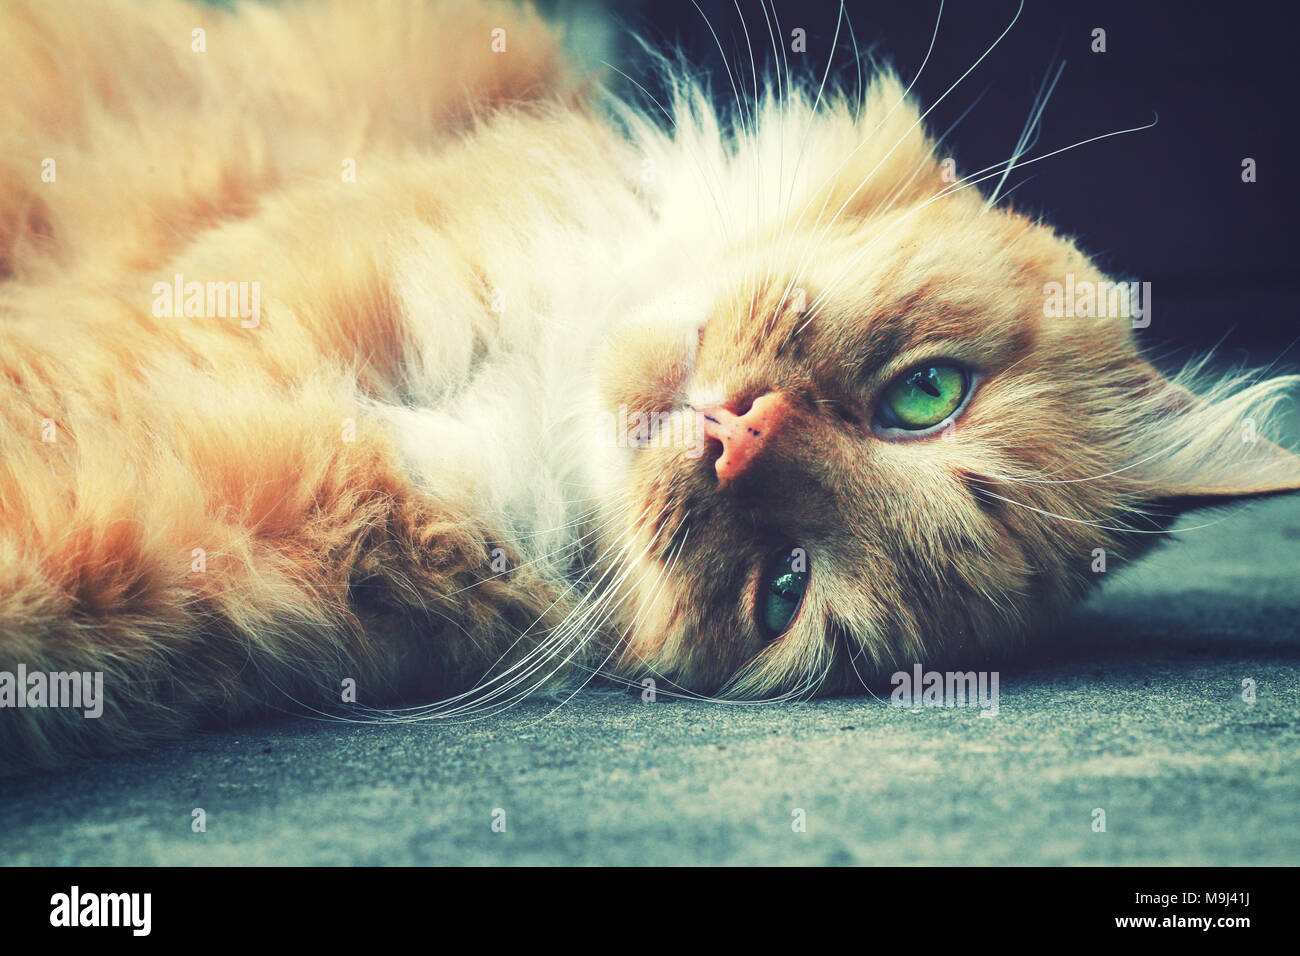 Gingembre moelleux relaxant cat s'étendit sur le sol Banque D'Images